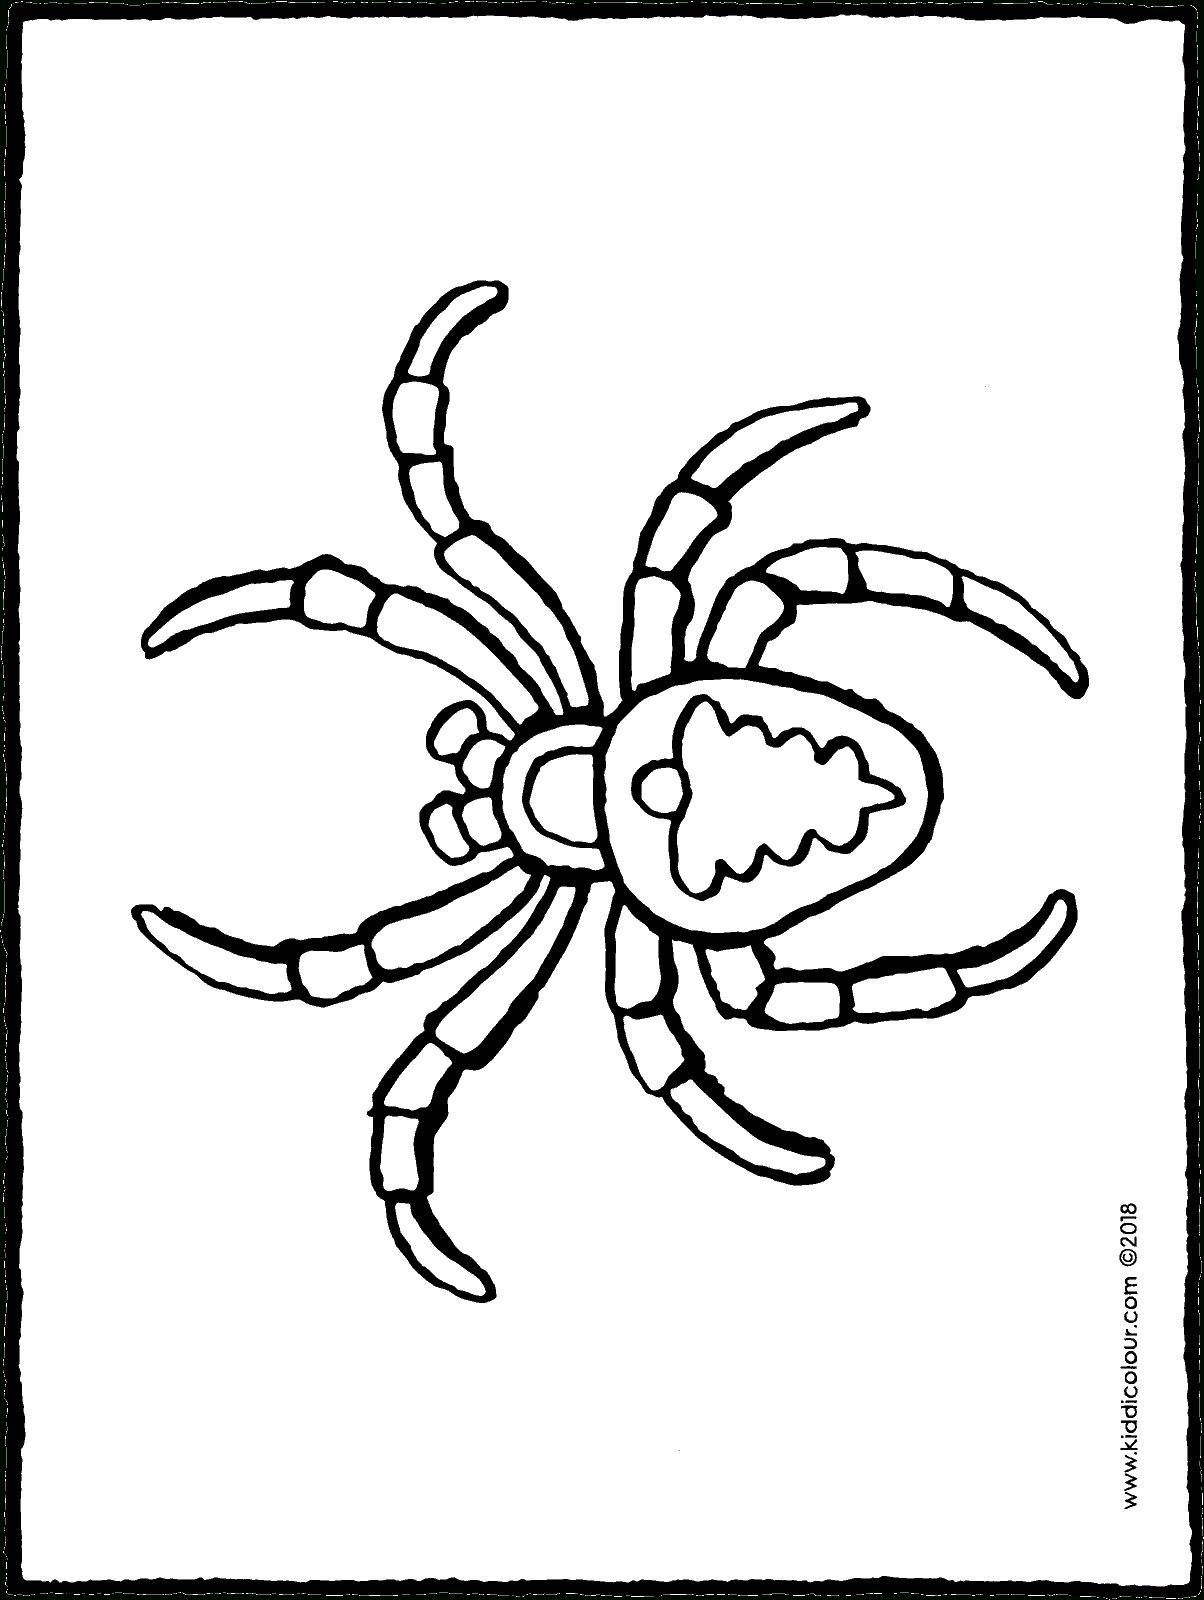 Spinne - Kiddimalseite in Ausmalbild Spinne